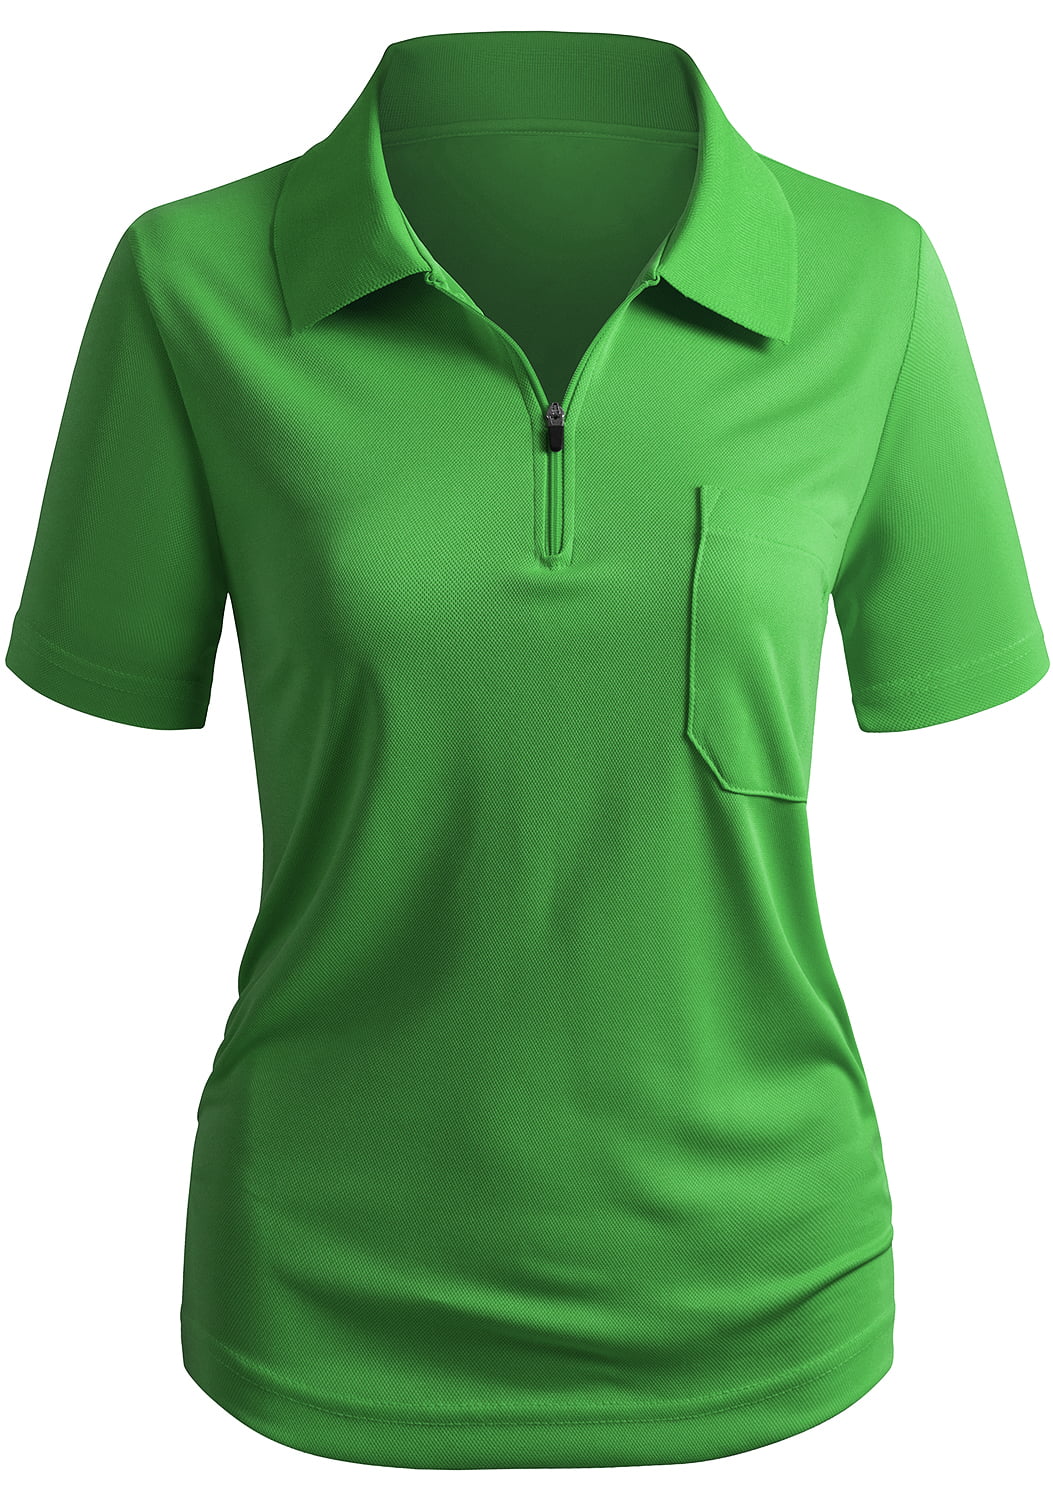 CLOVERY Golf Wear Moisture Wicking Short Sleeve Zipup POLO Shirt 